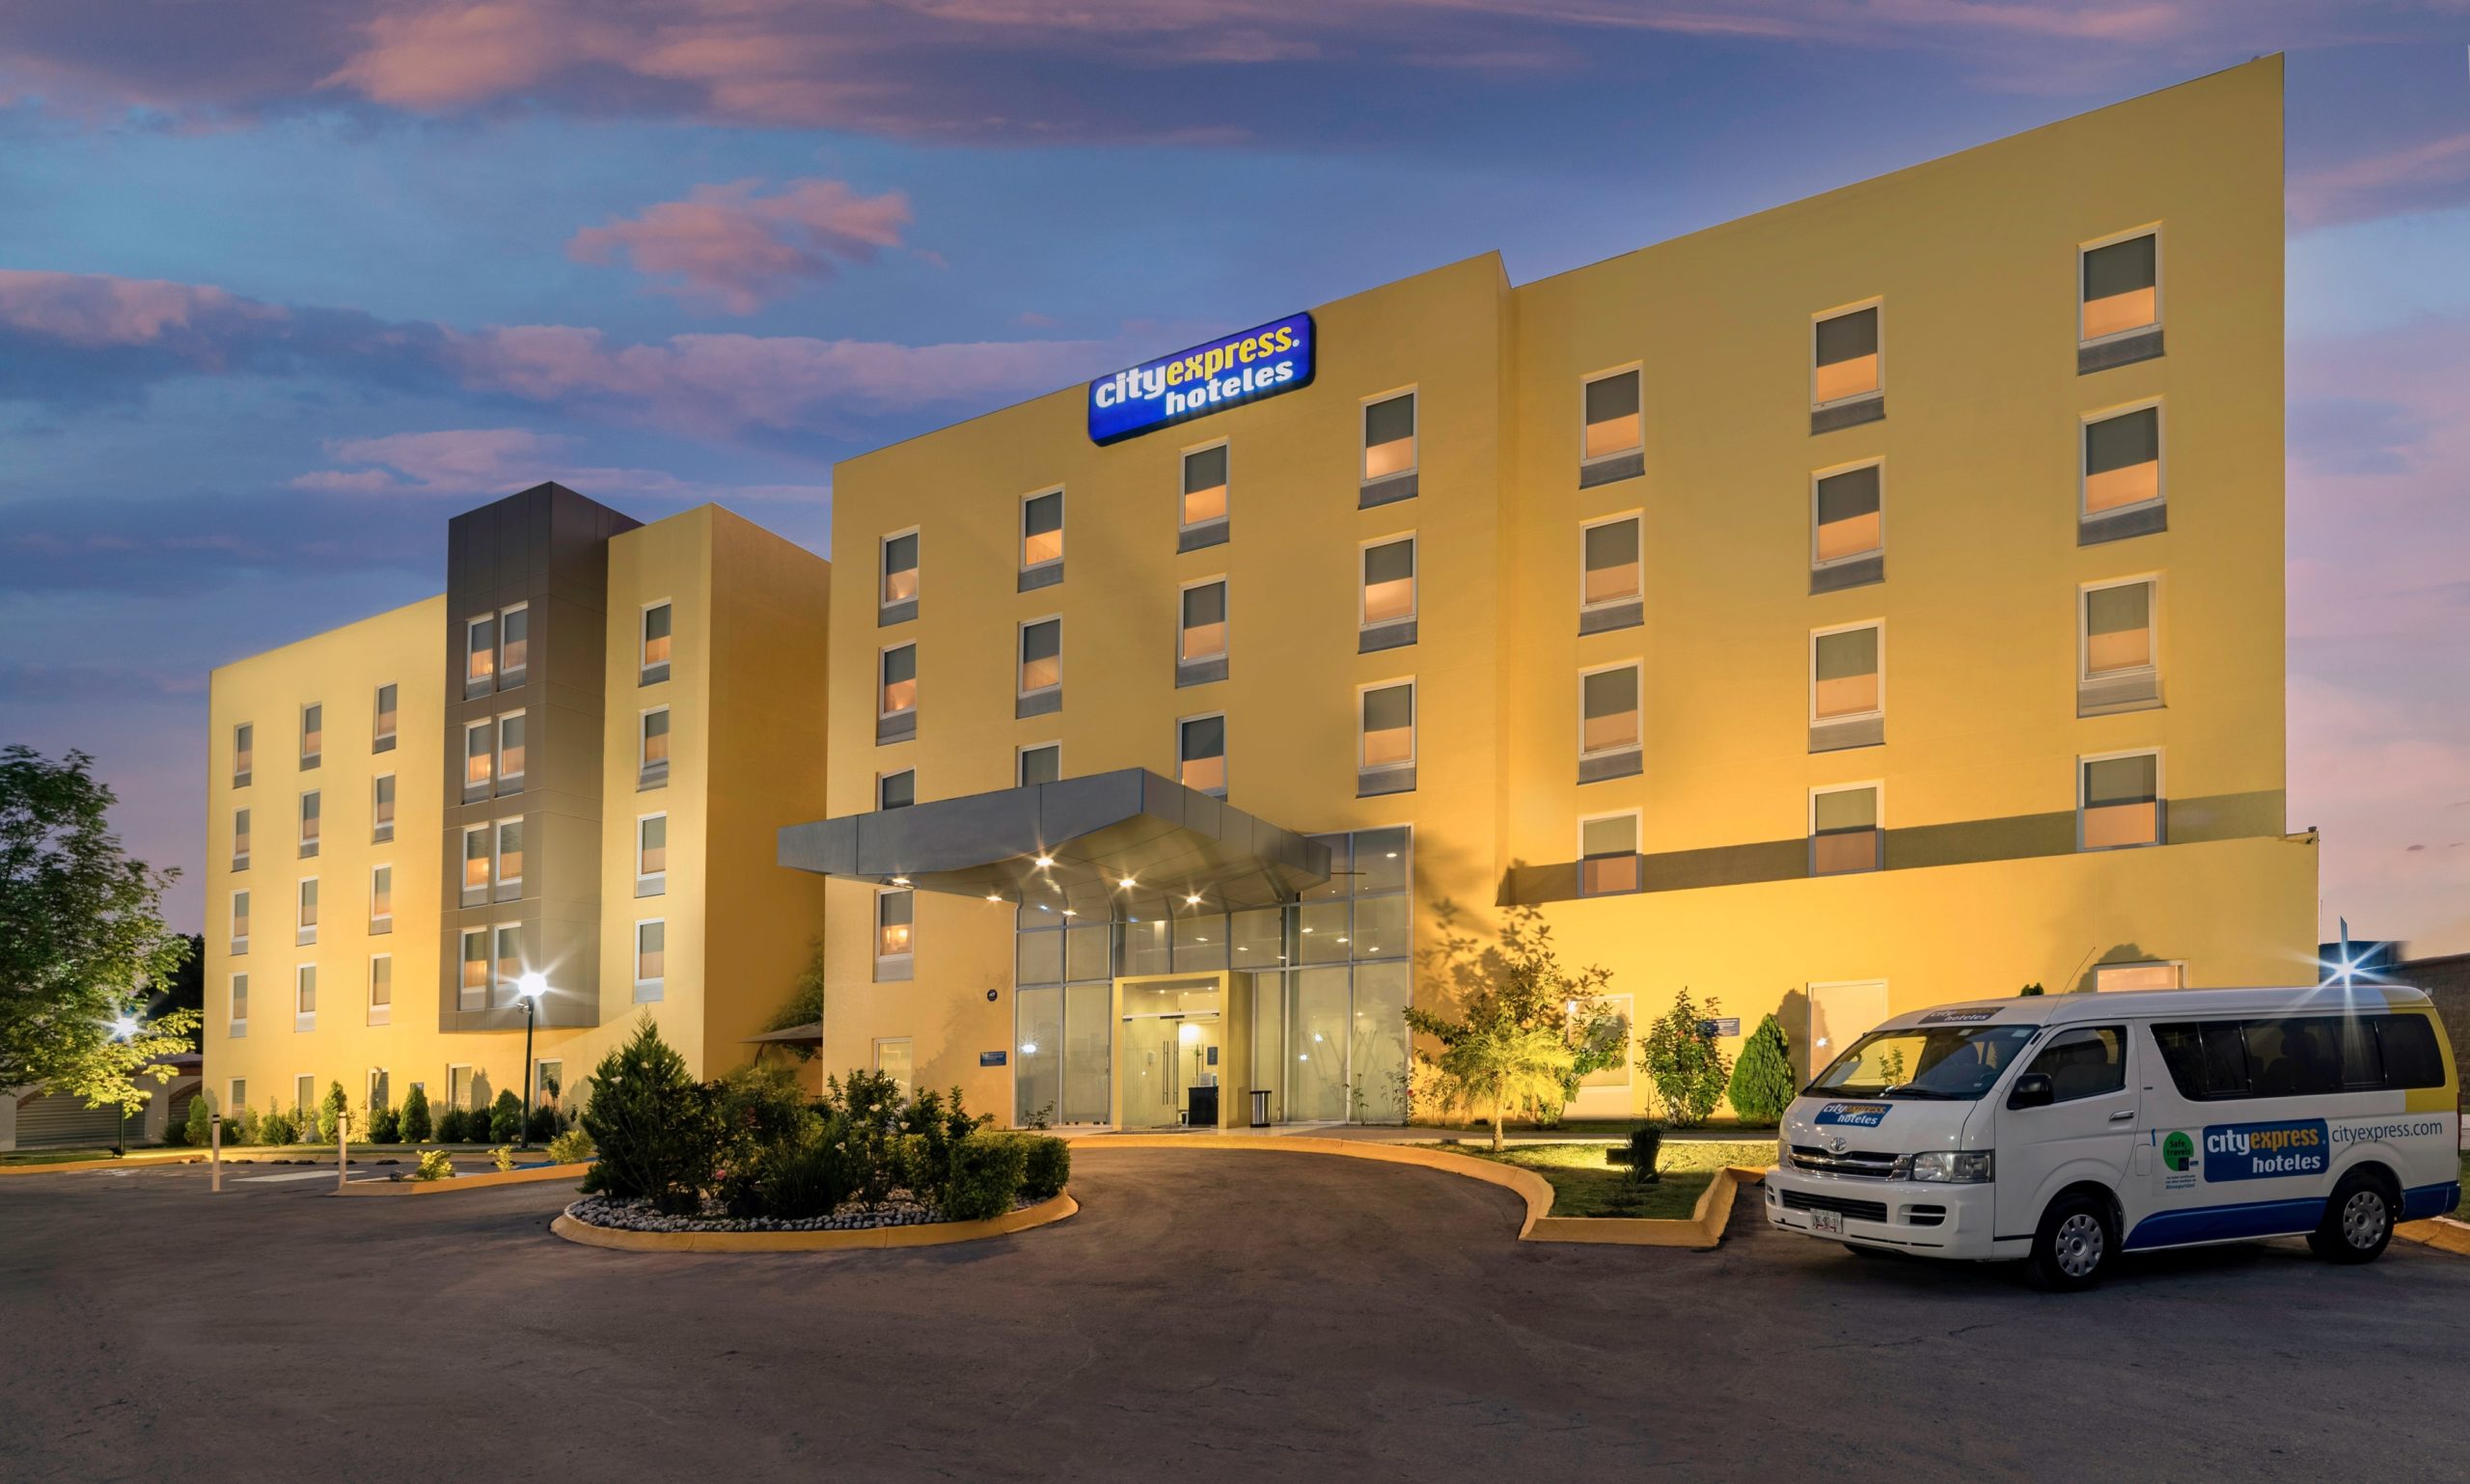 Hoteles City acuerda venta de sus marcas a Marriott International por 100 mdd